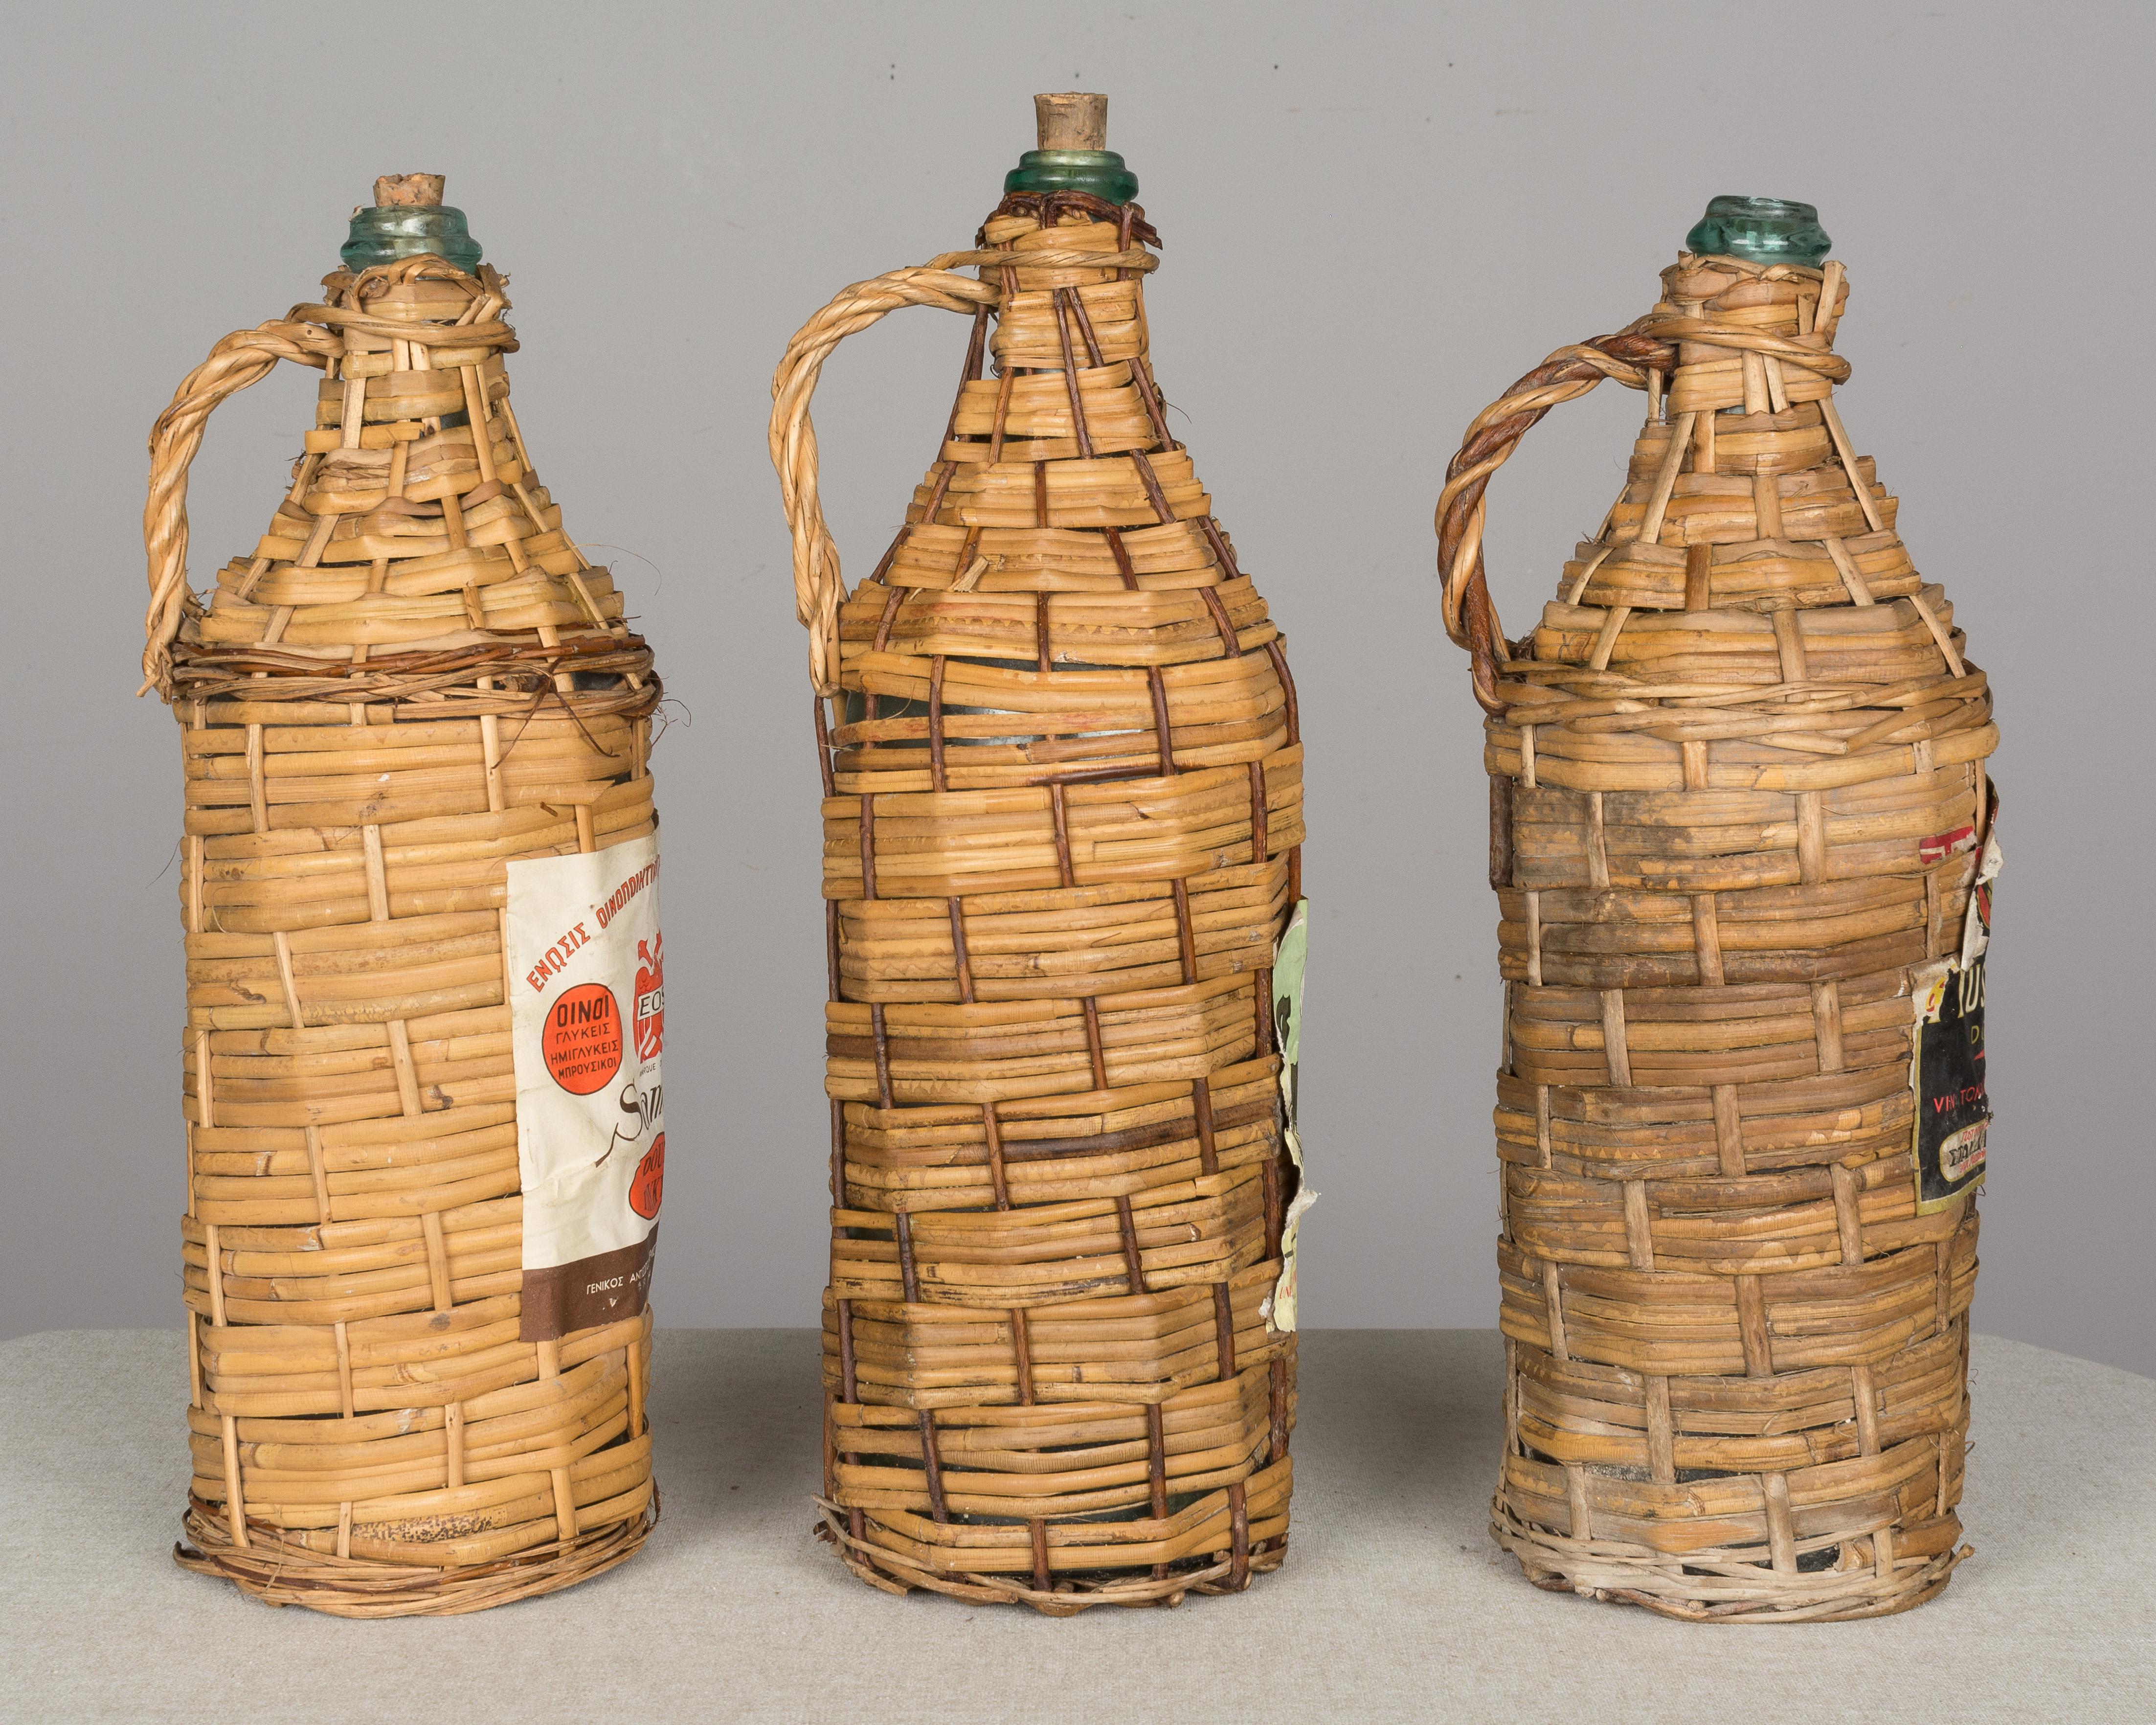 wicker wrapped bottles